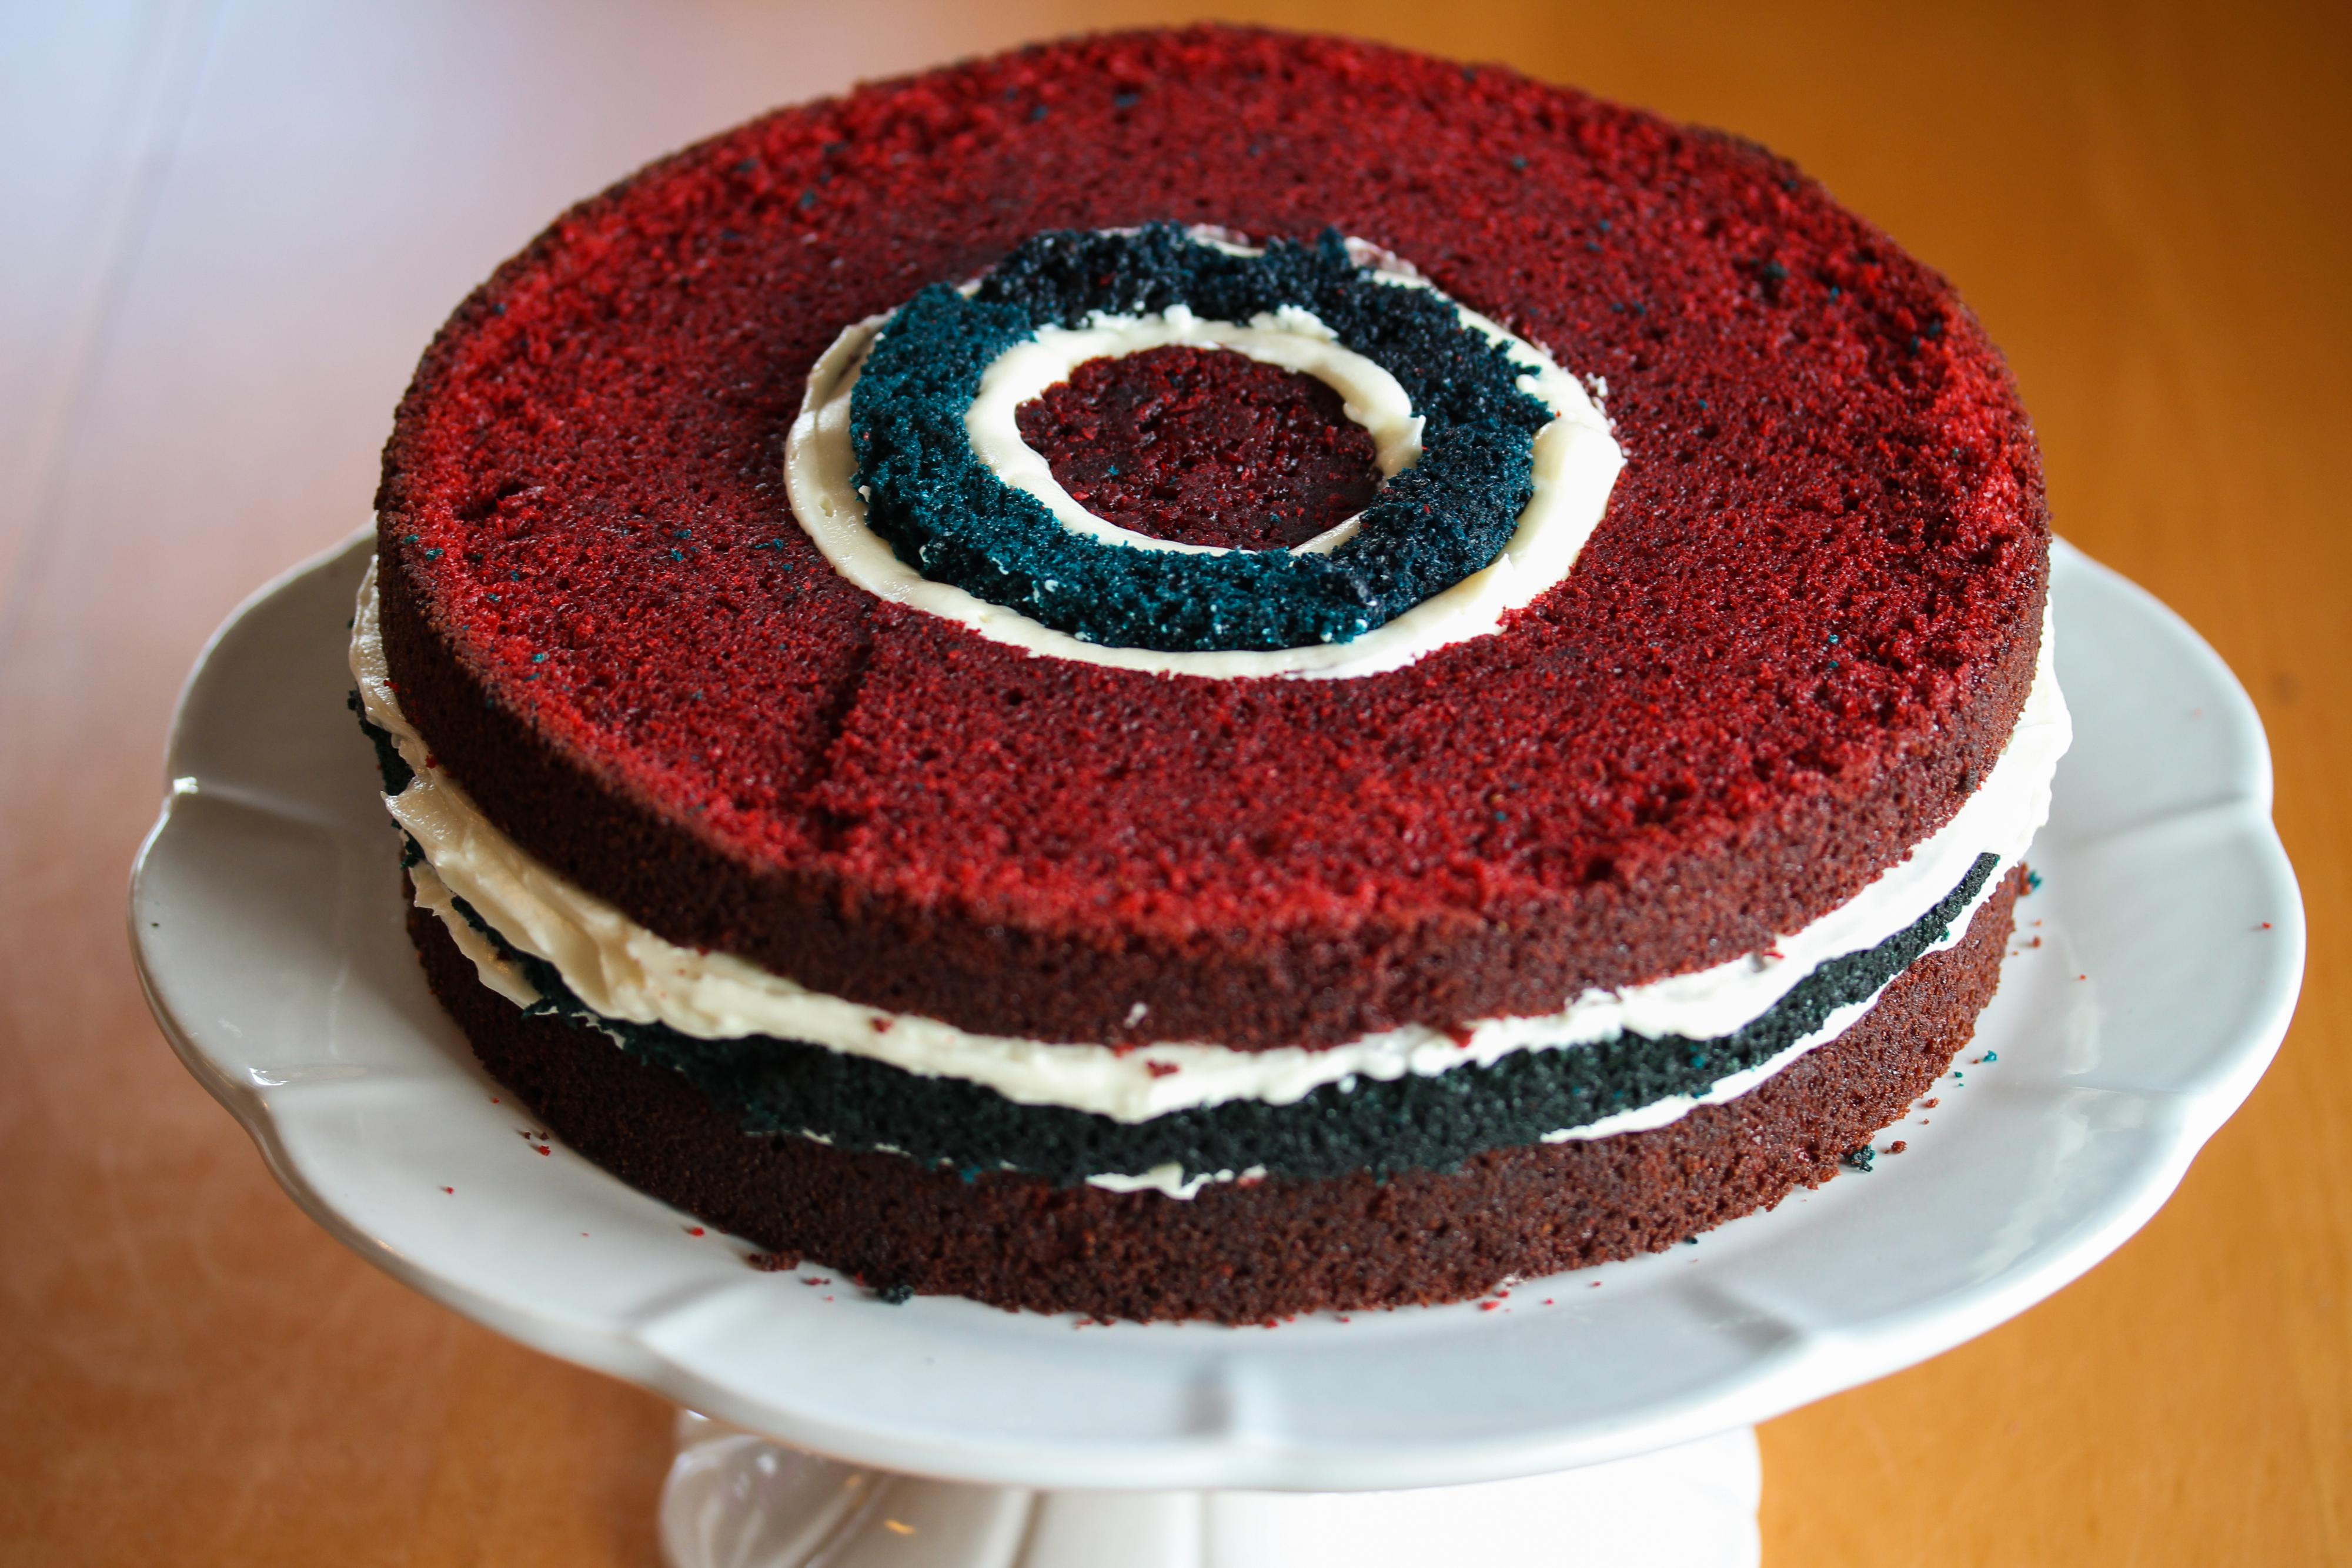 Legg på den siste røde kakeringen og den lille, røde kaken i midten. Fyll igjen opp mellomrommet mellom blå og røde kaker ved å sprøyte inn ostekrem. Hvis den blå kaken igjen er litt lavere, kan du fylle på med blå kakerester for å få samme høyde på kaken.